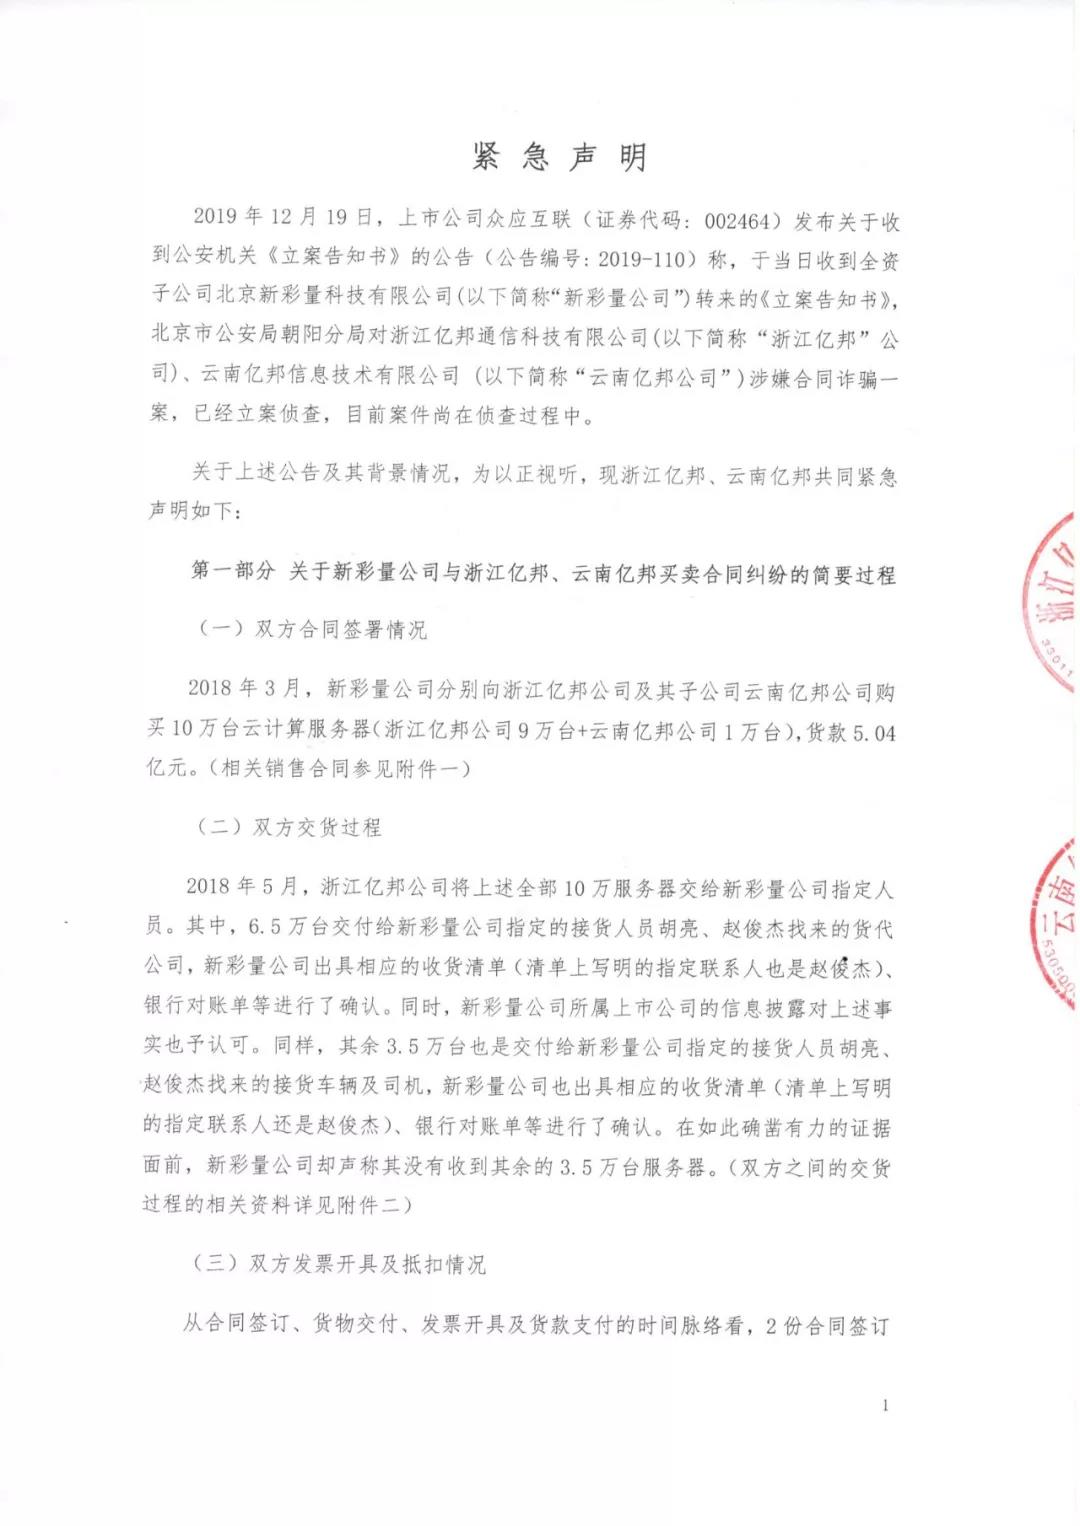 矿机巨头亿邦国际“陷合同诈骗案”，已向北京公安局报送相关材料